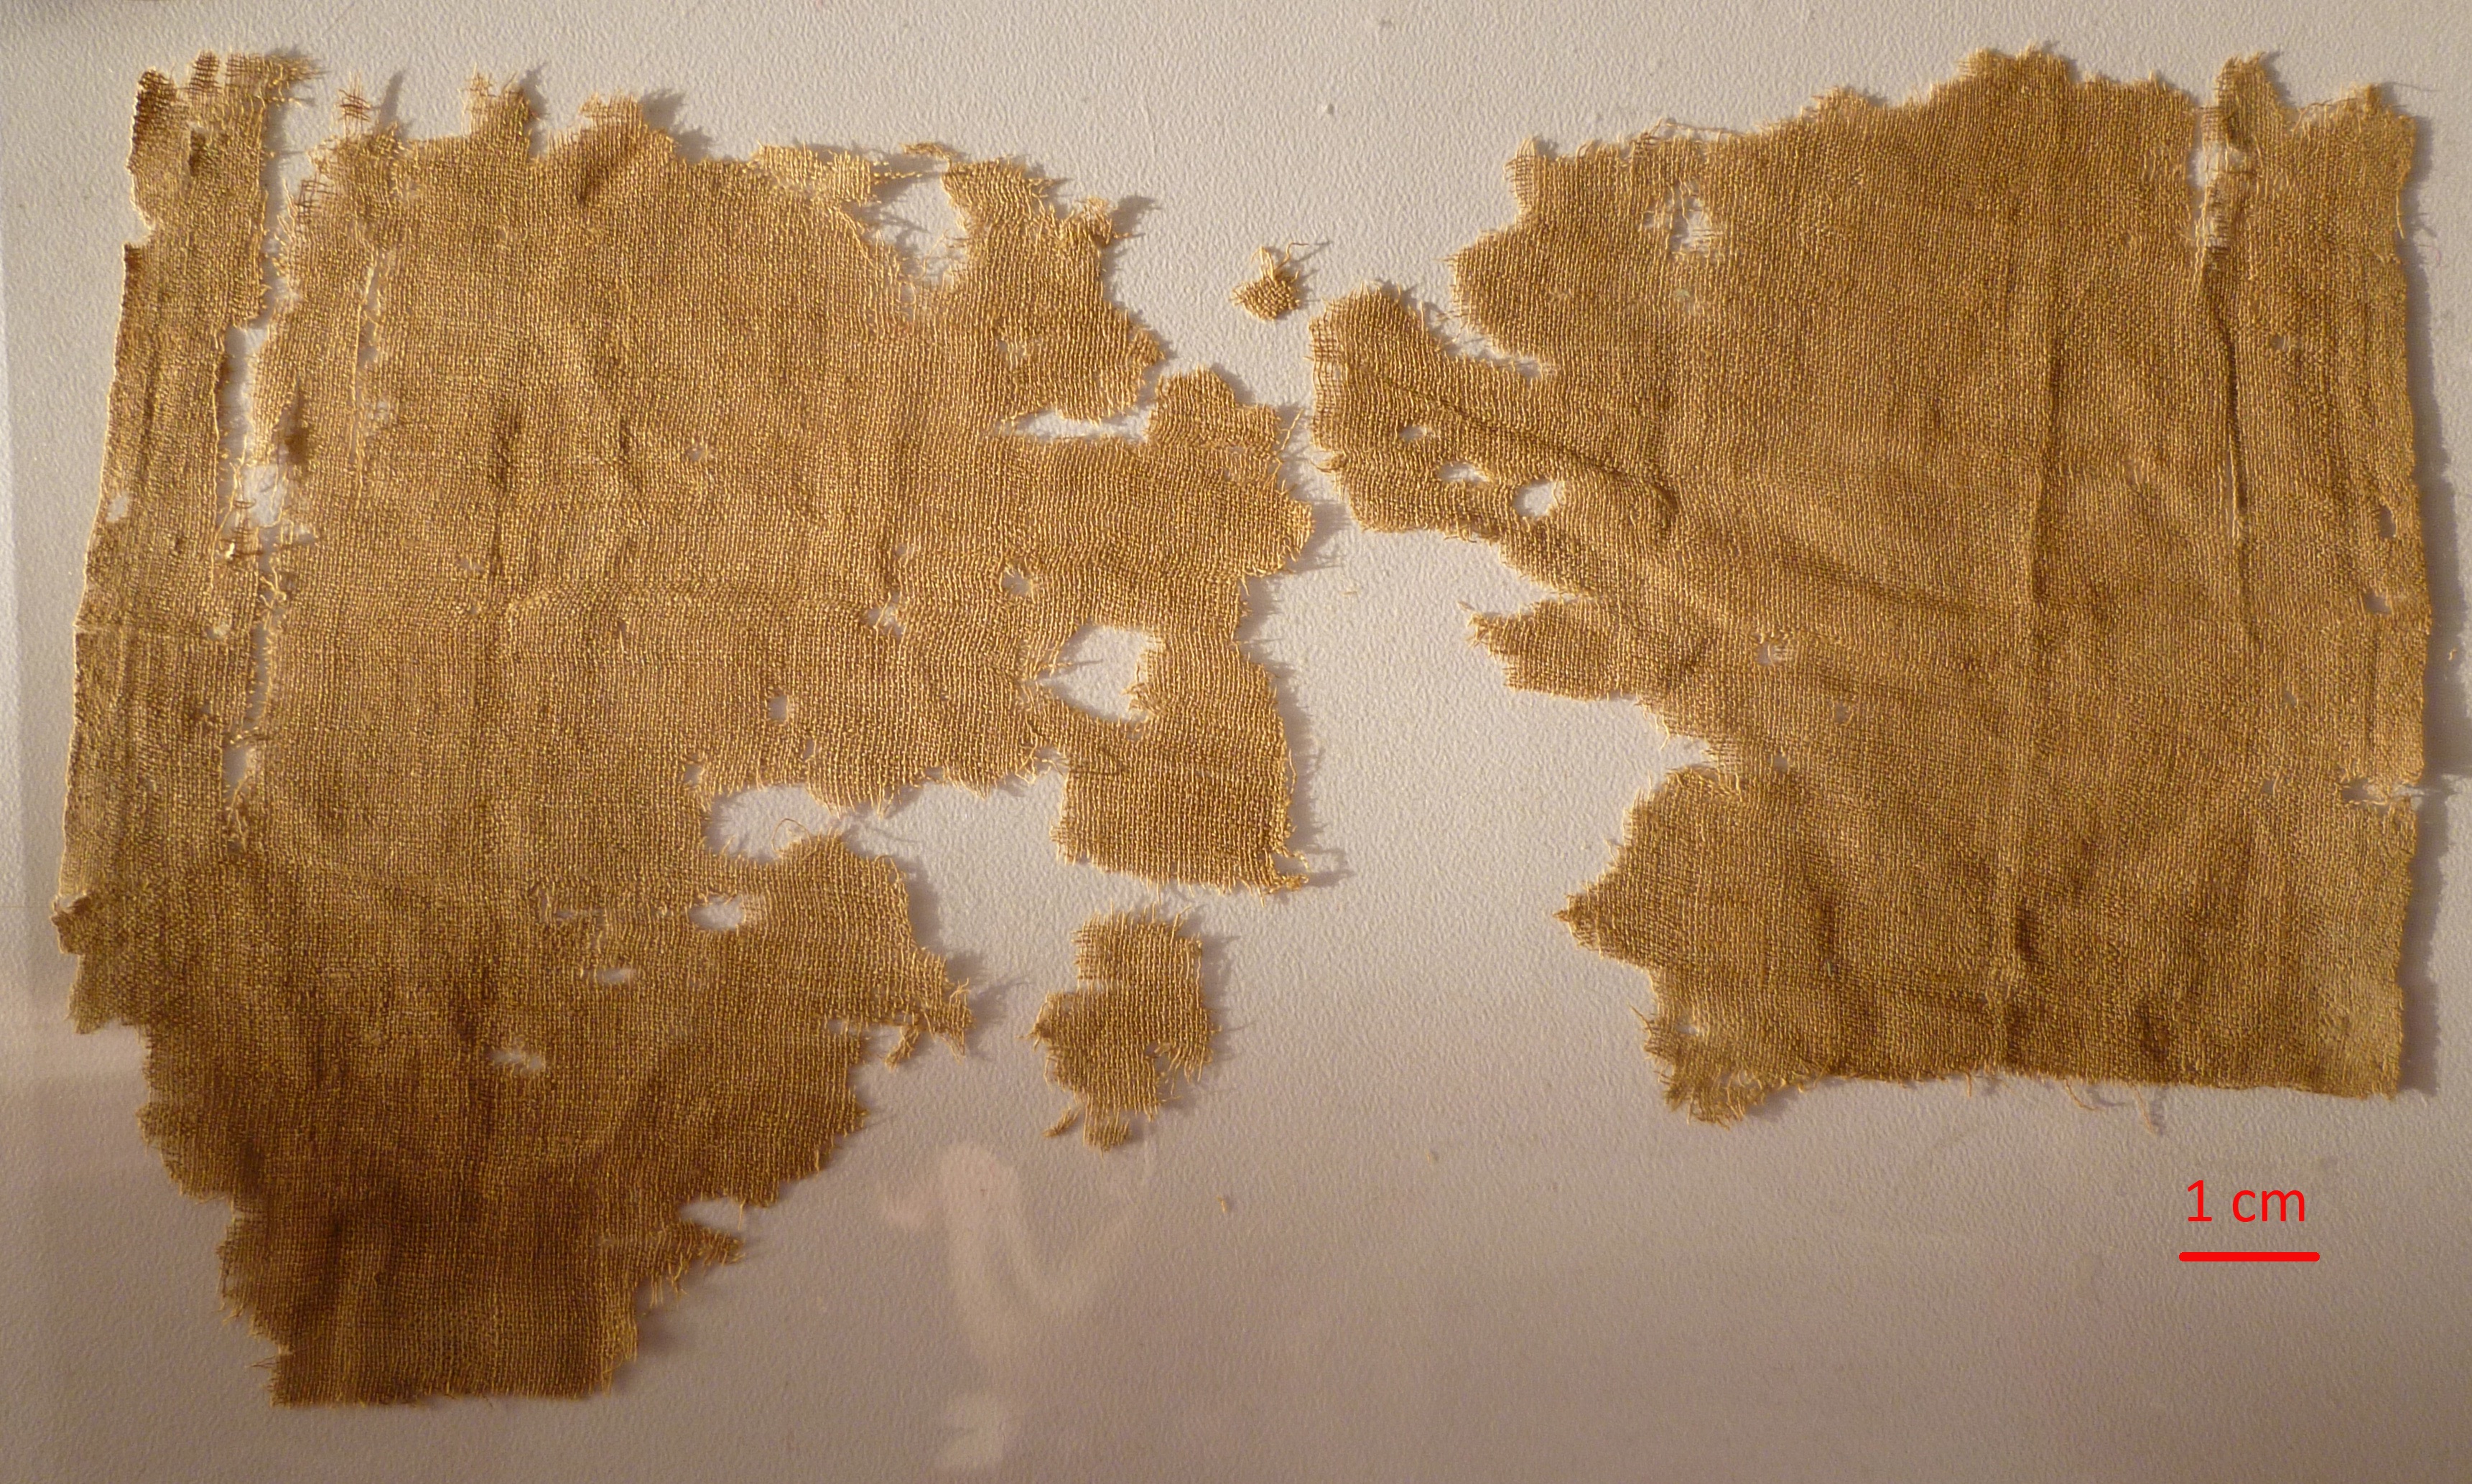 Ύφασμα ΜΝΜ 637 από το Ακρωτήριο Ζωστήρα, Αττική, 5ος αι. π.Χ. Λούβρο. Φωτογραφία C. Moulhérat. 